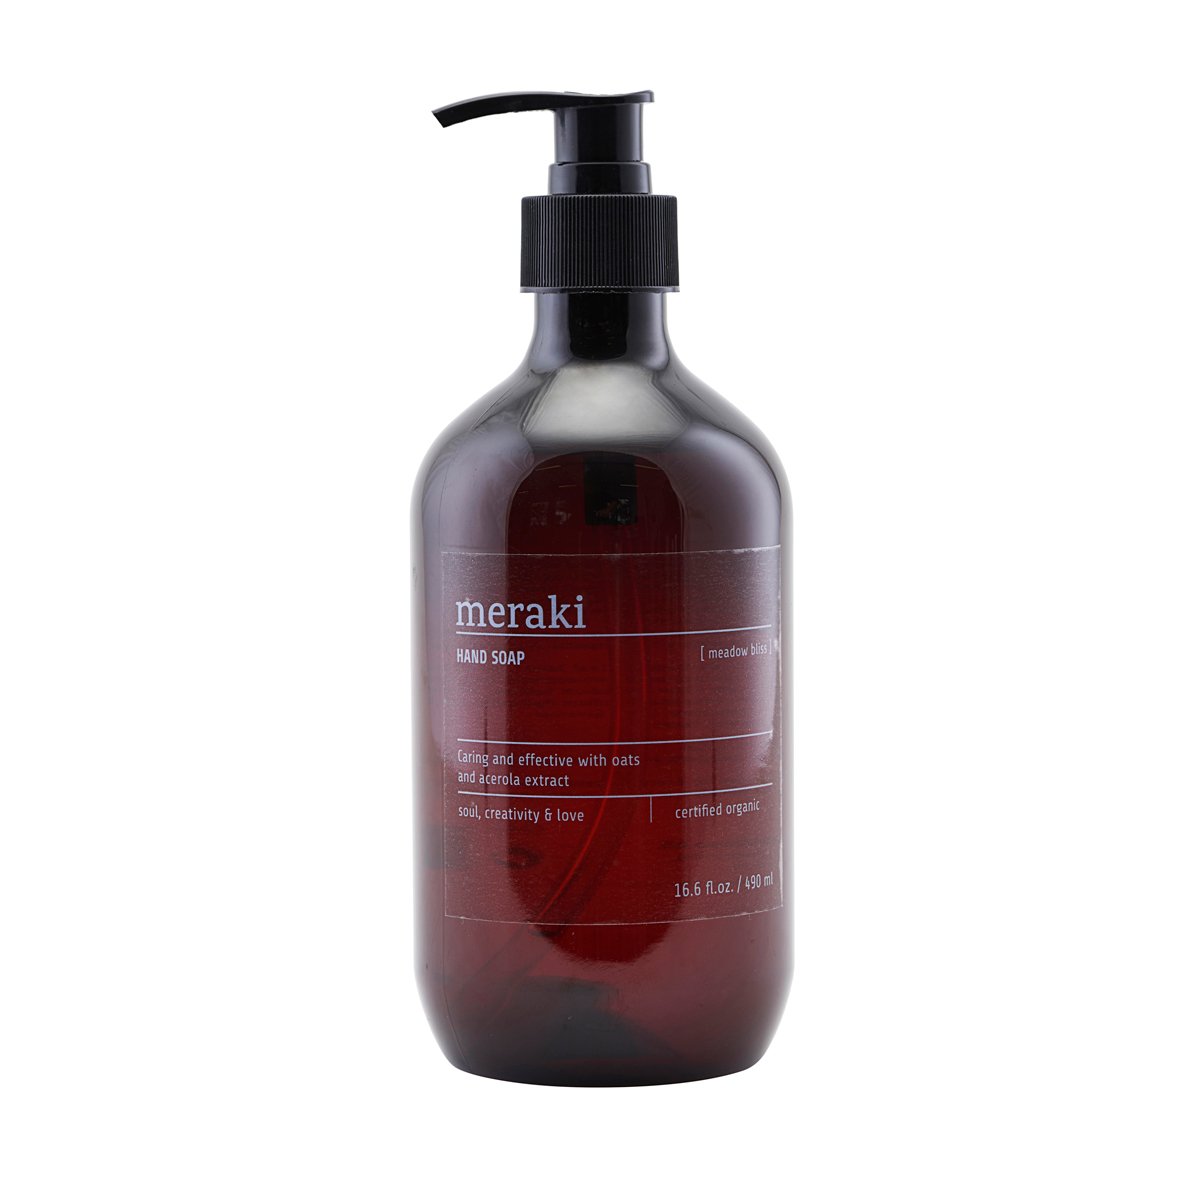 Meraki - Hand soap (Meadow bliss) 490ml